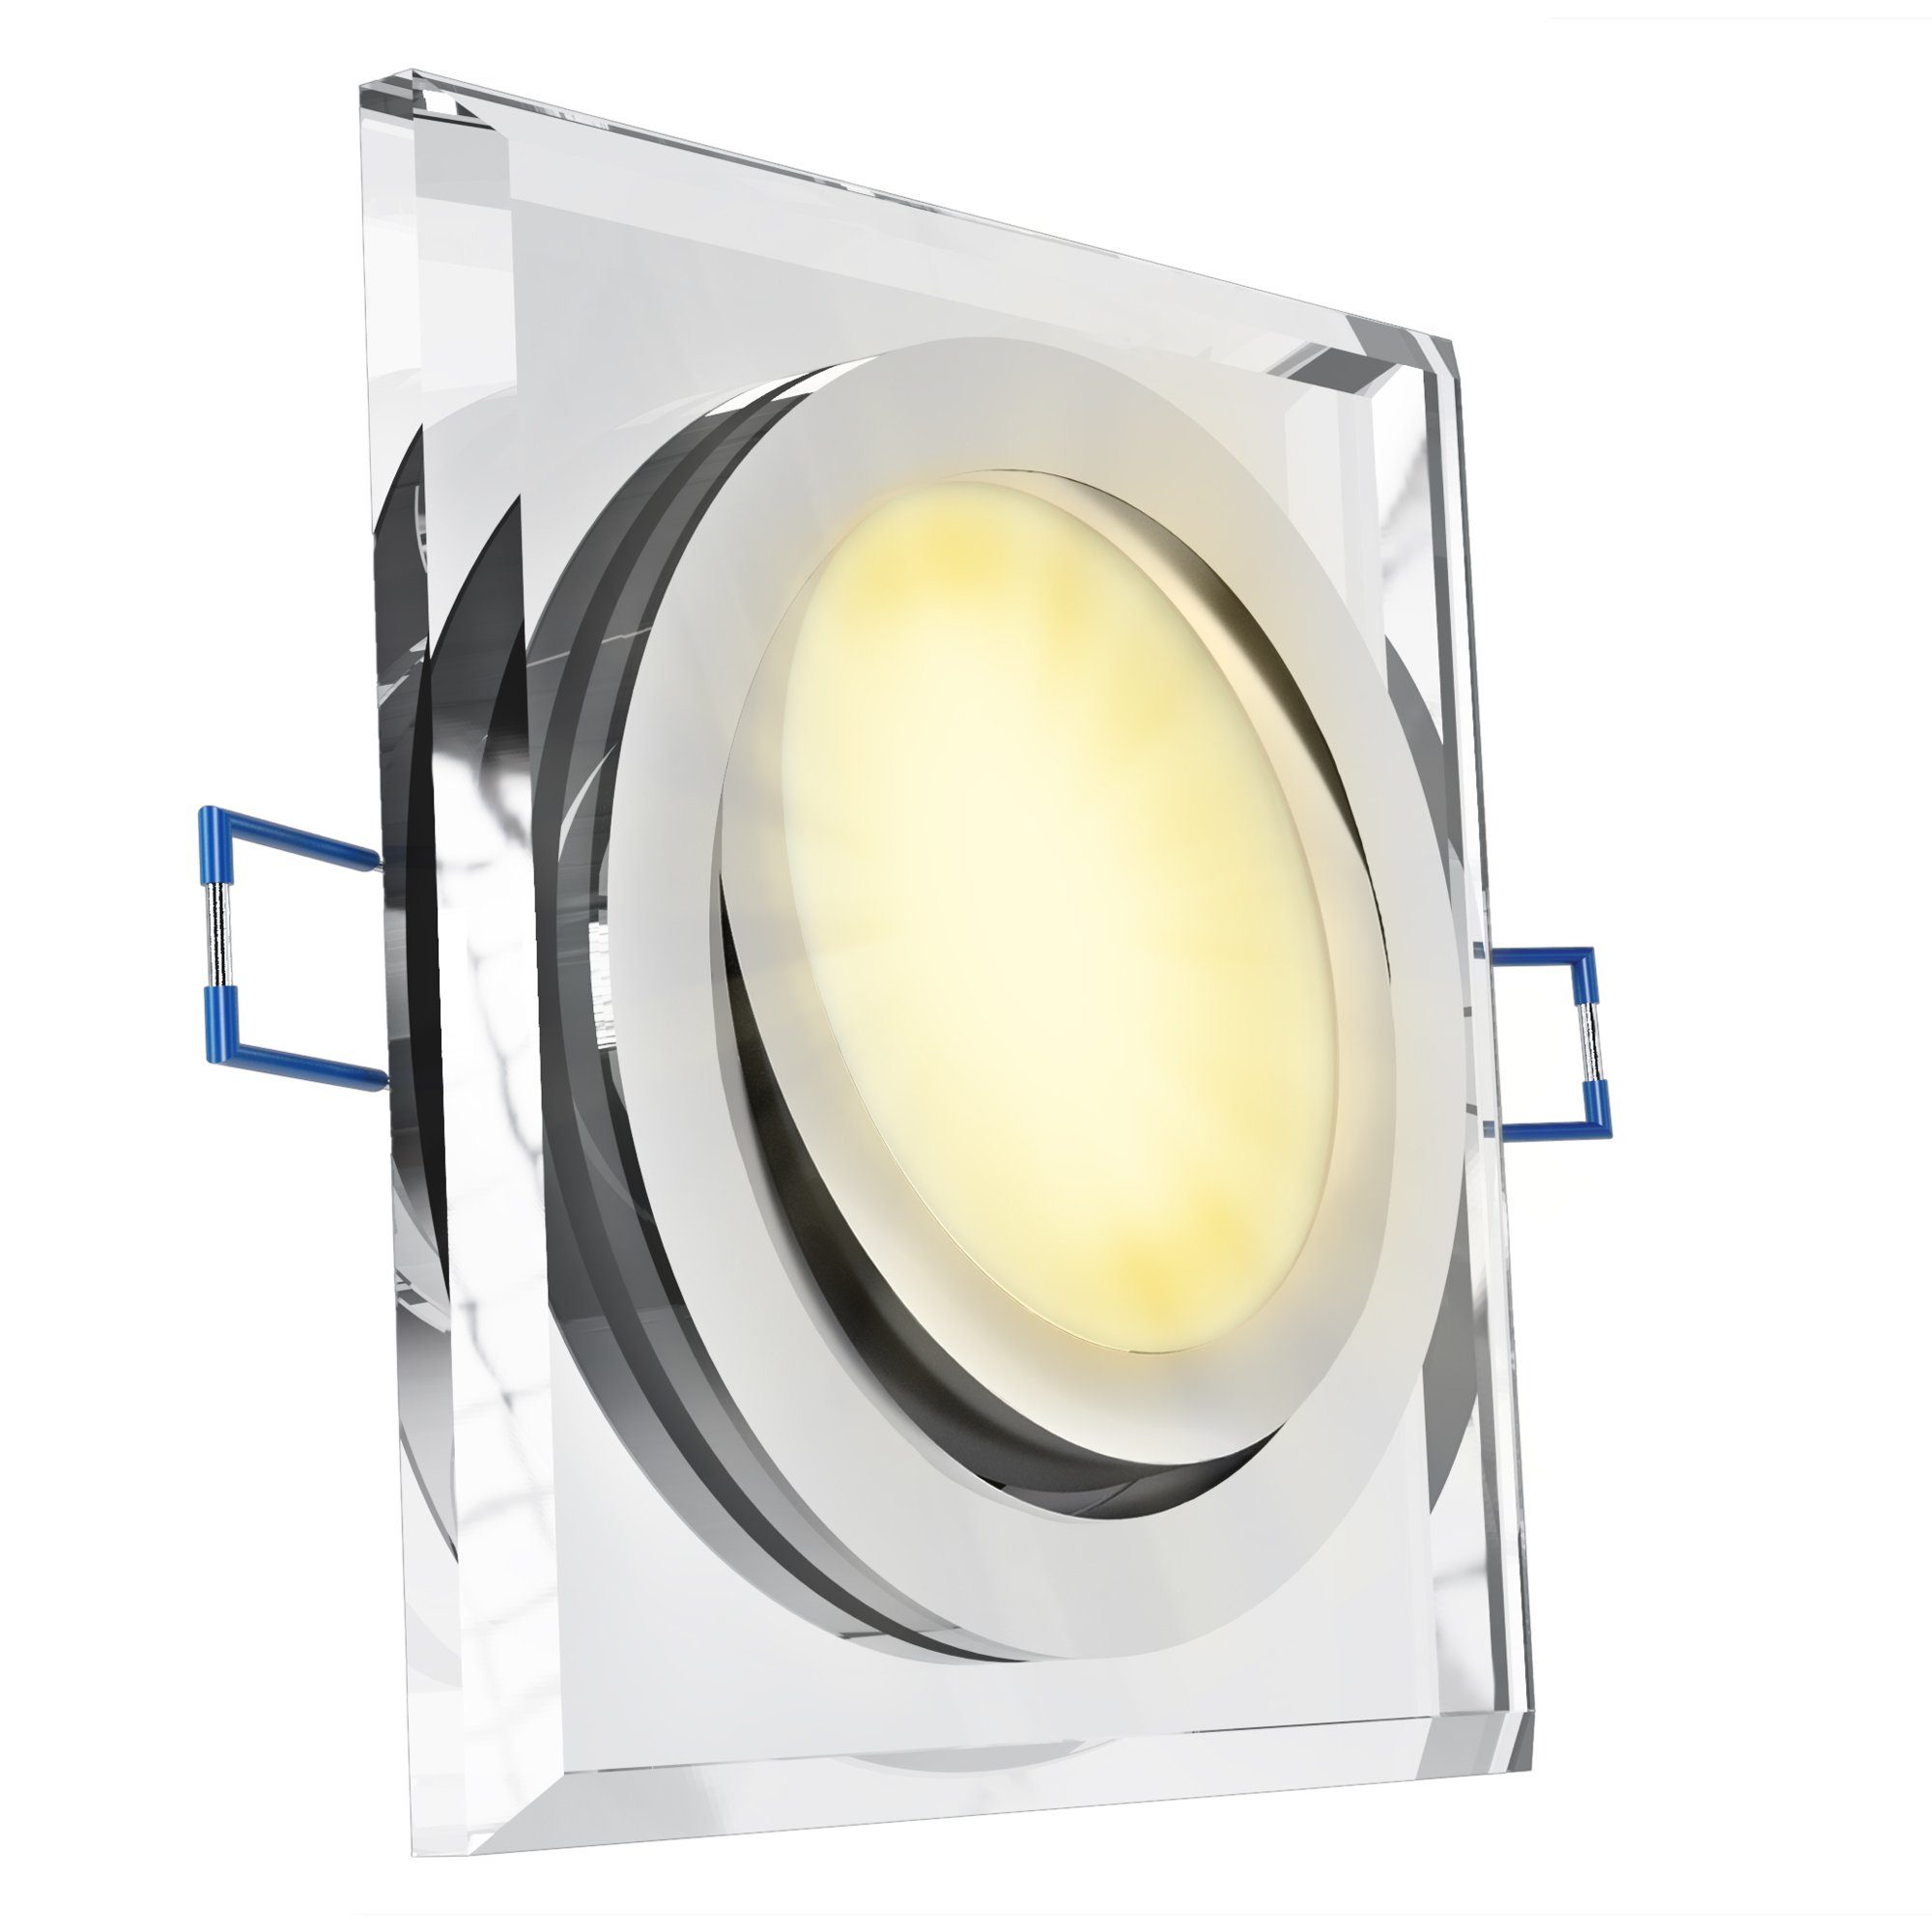 SSC-LUXon LED Einbaustrahler Flacher Glas LED Einbauspot schwenkbar quadratisch mit LED Modul 230V, Warmweiß